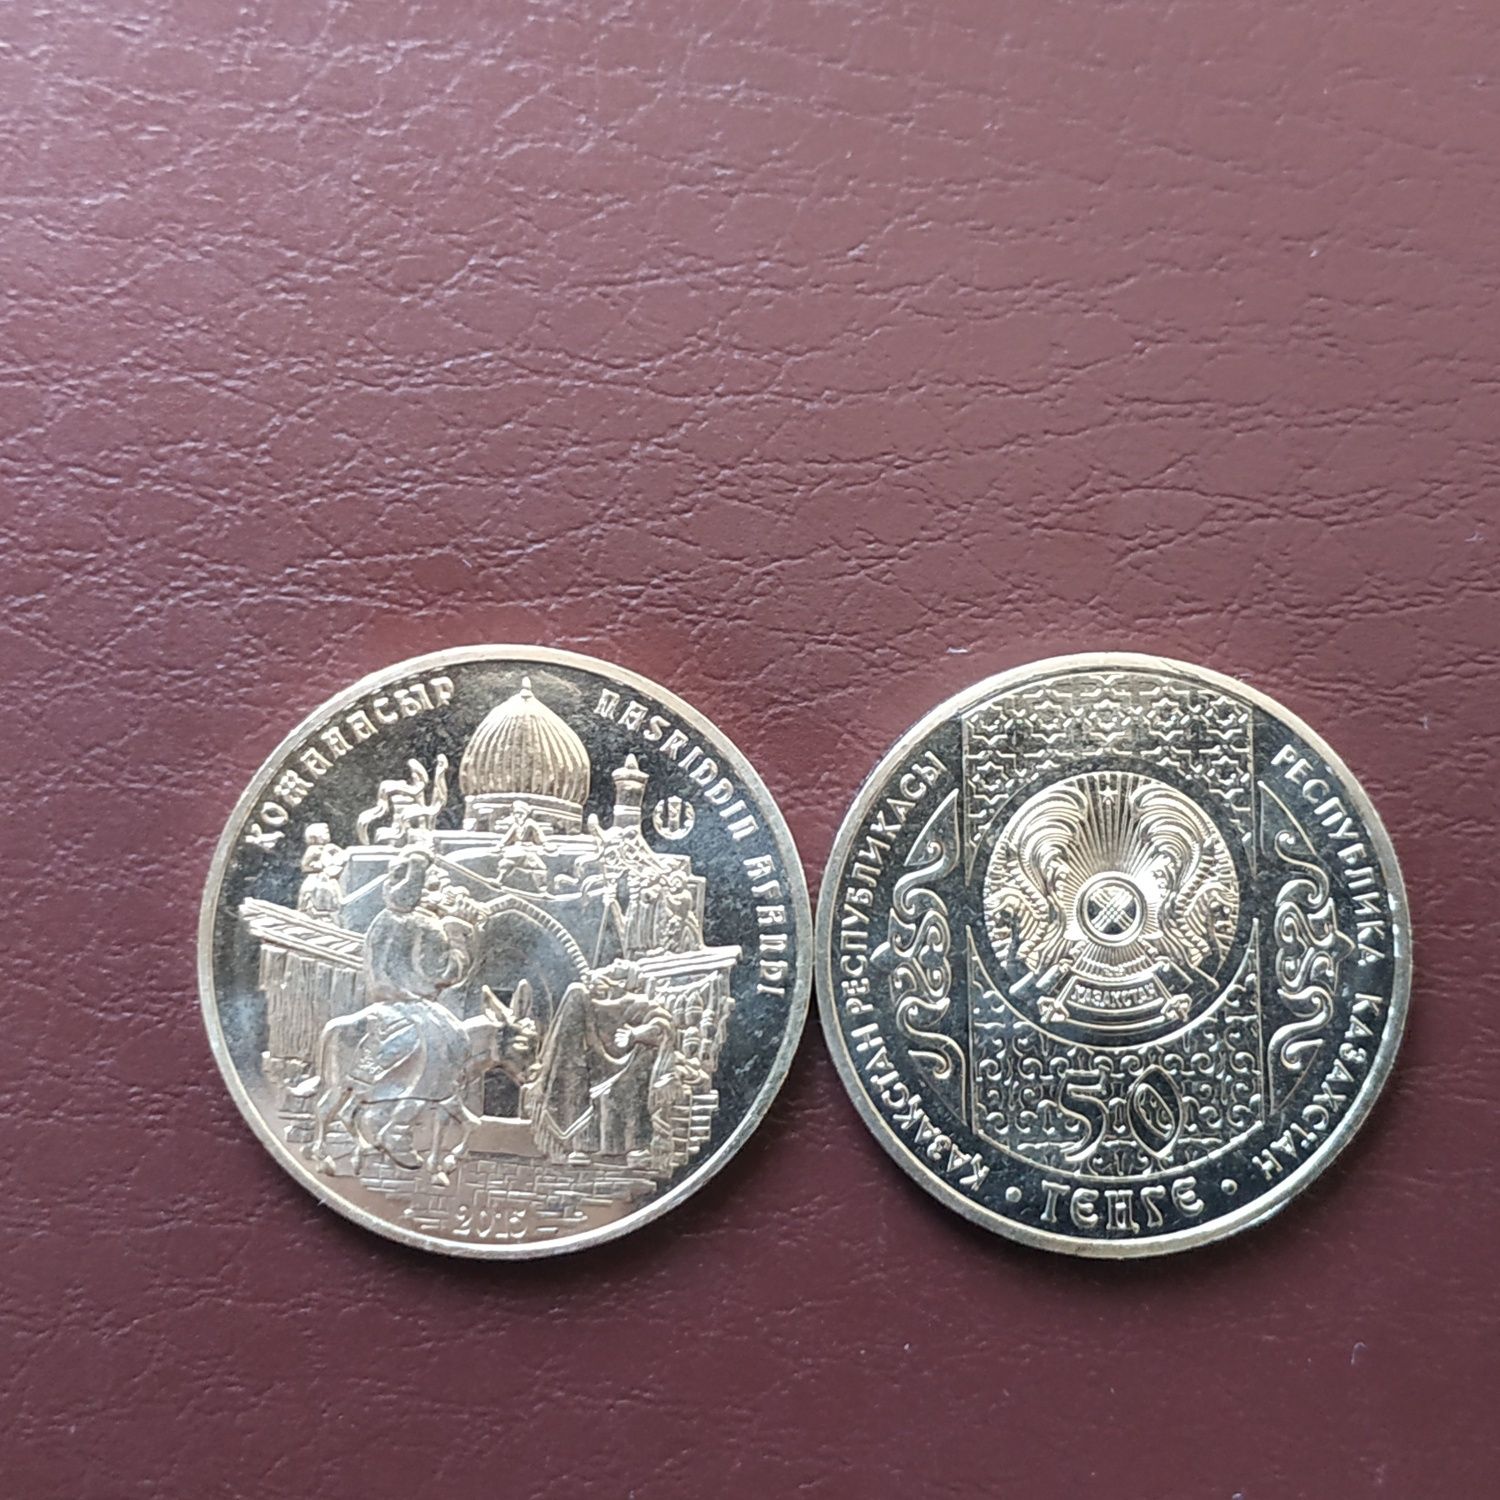 Юбилейные монеты Казахстана,из серии"Народные сказки".